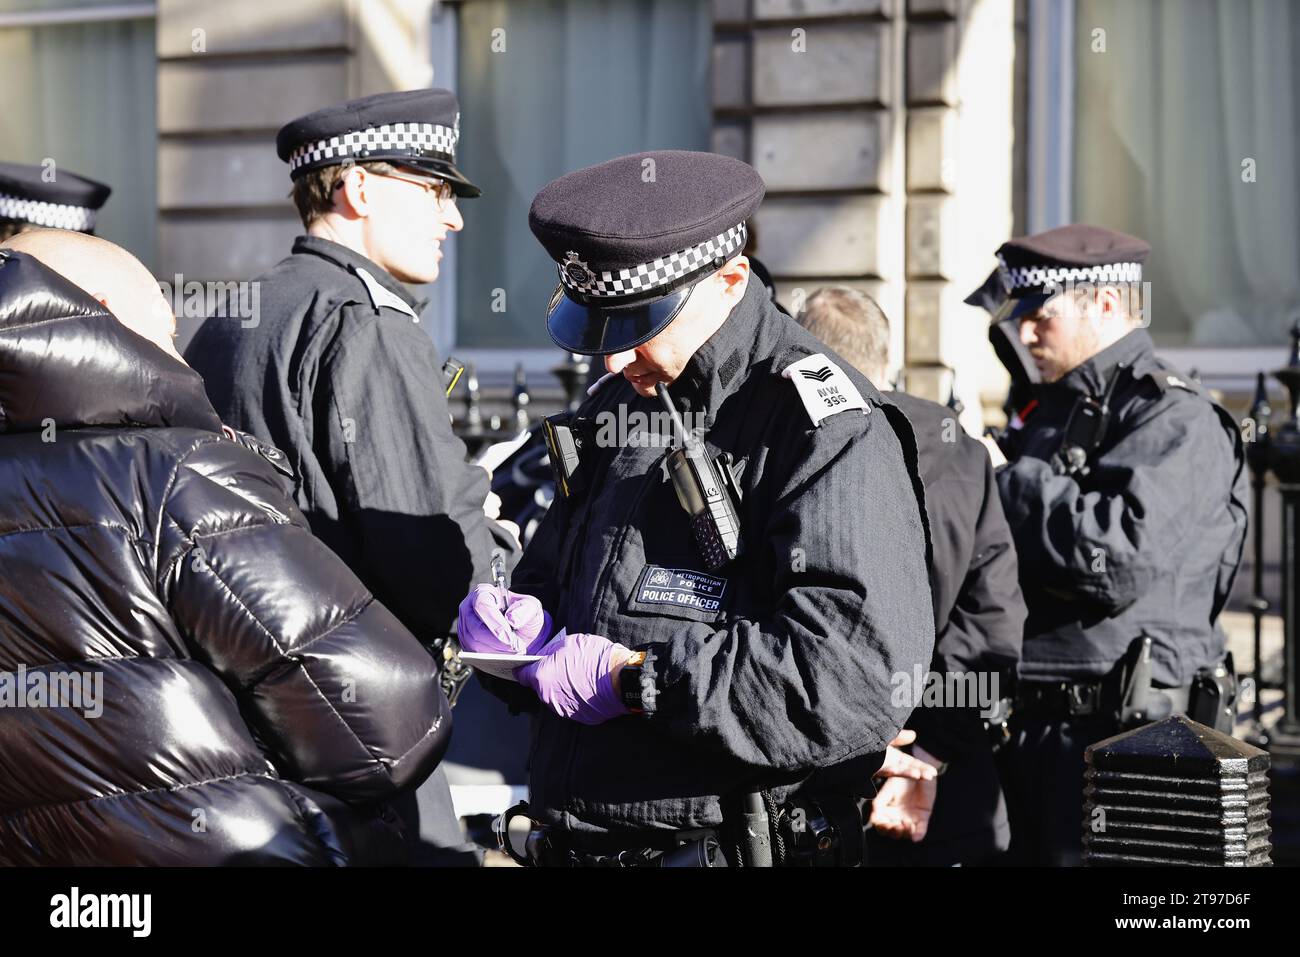 Inghilterra, Londra, Whitehall, polizia fermano e perquisiscono sospetti sostenitori della destra ai sensi della sezione 60 giustizia penale e ordine pubblico. Foto Stock